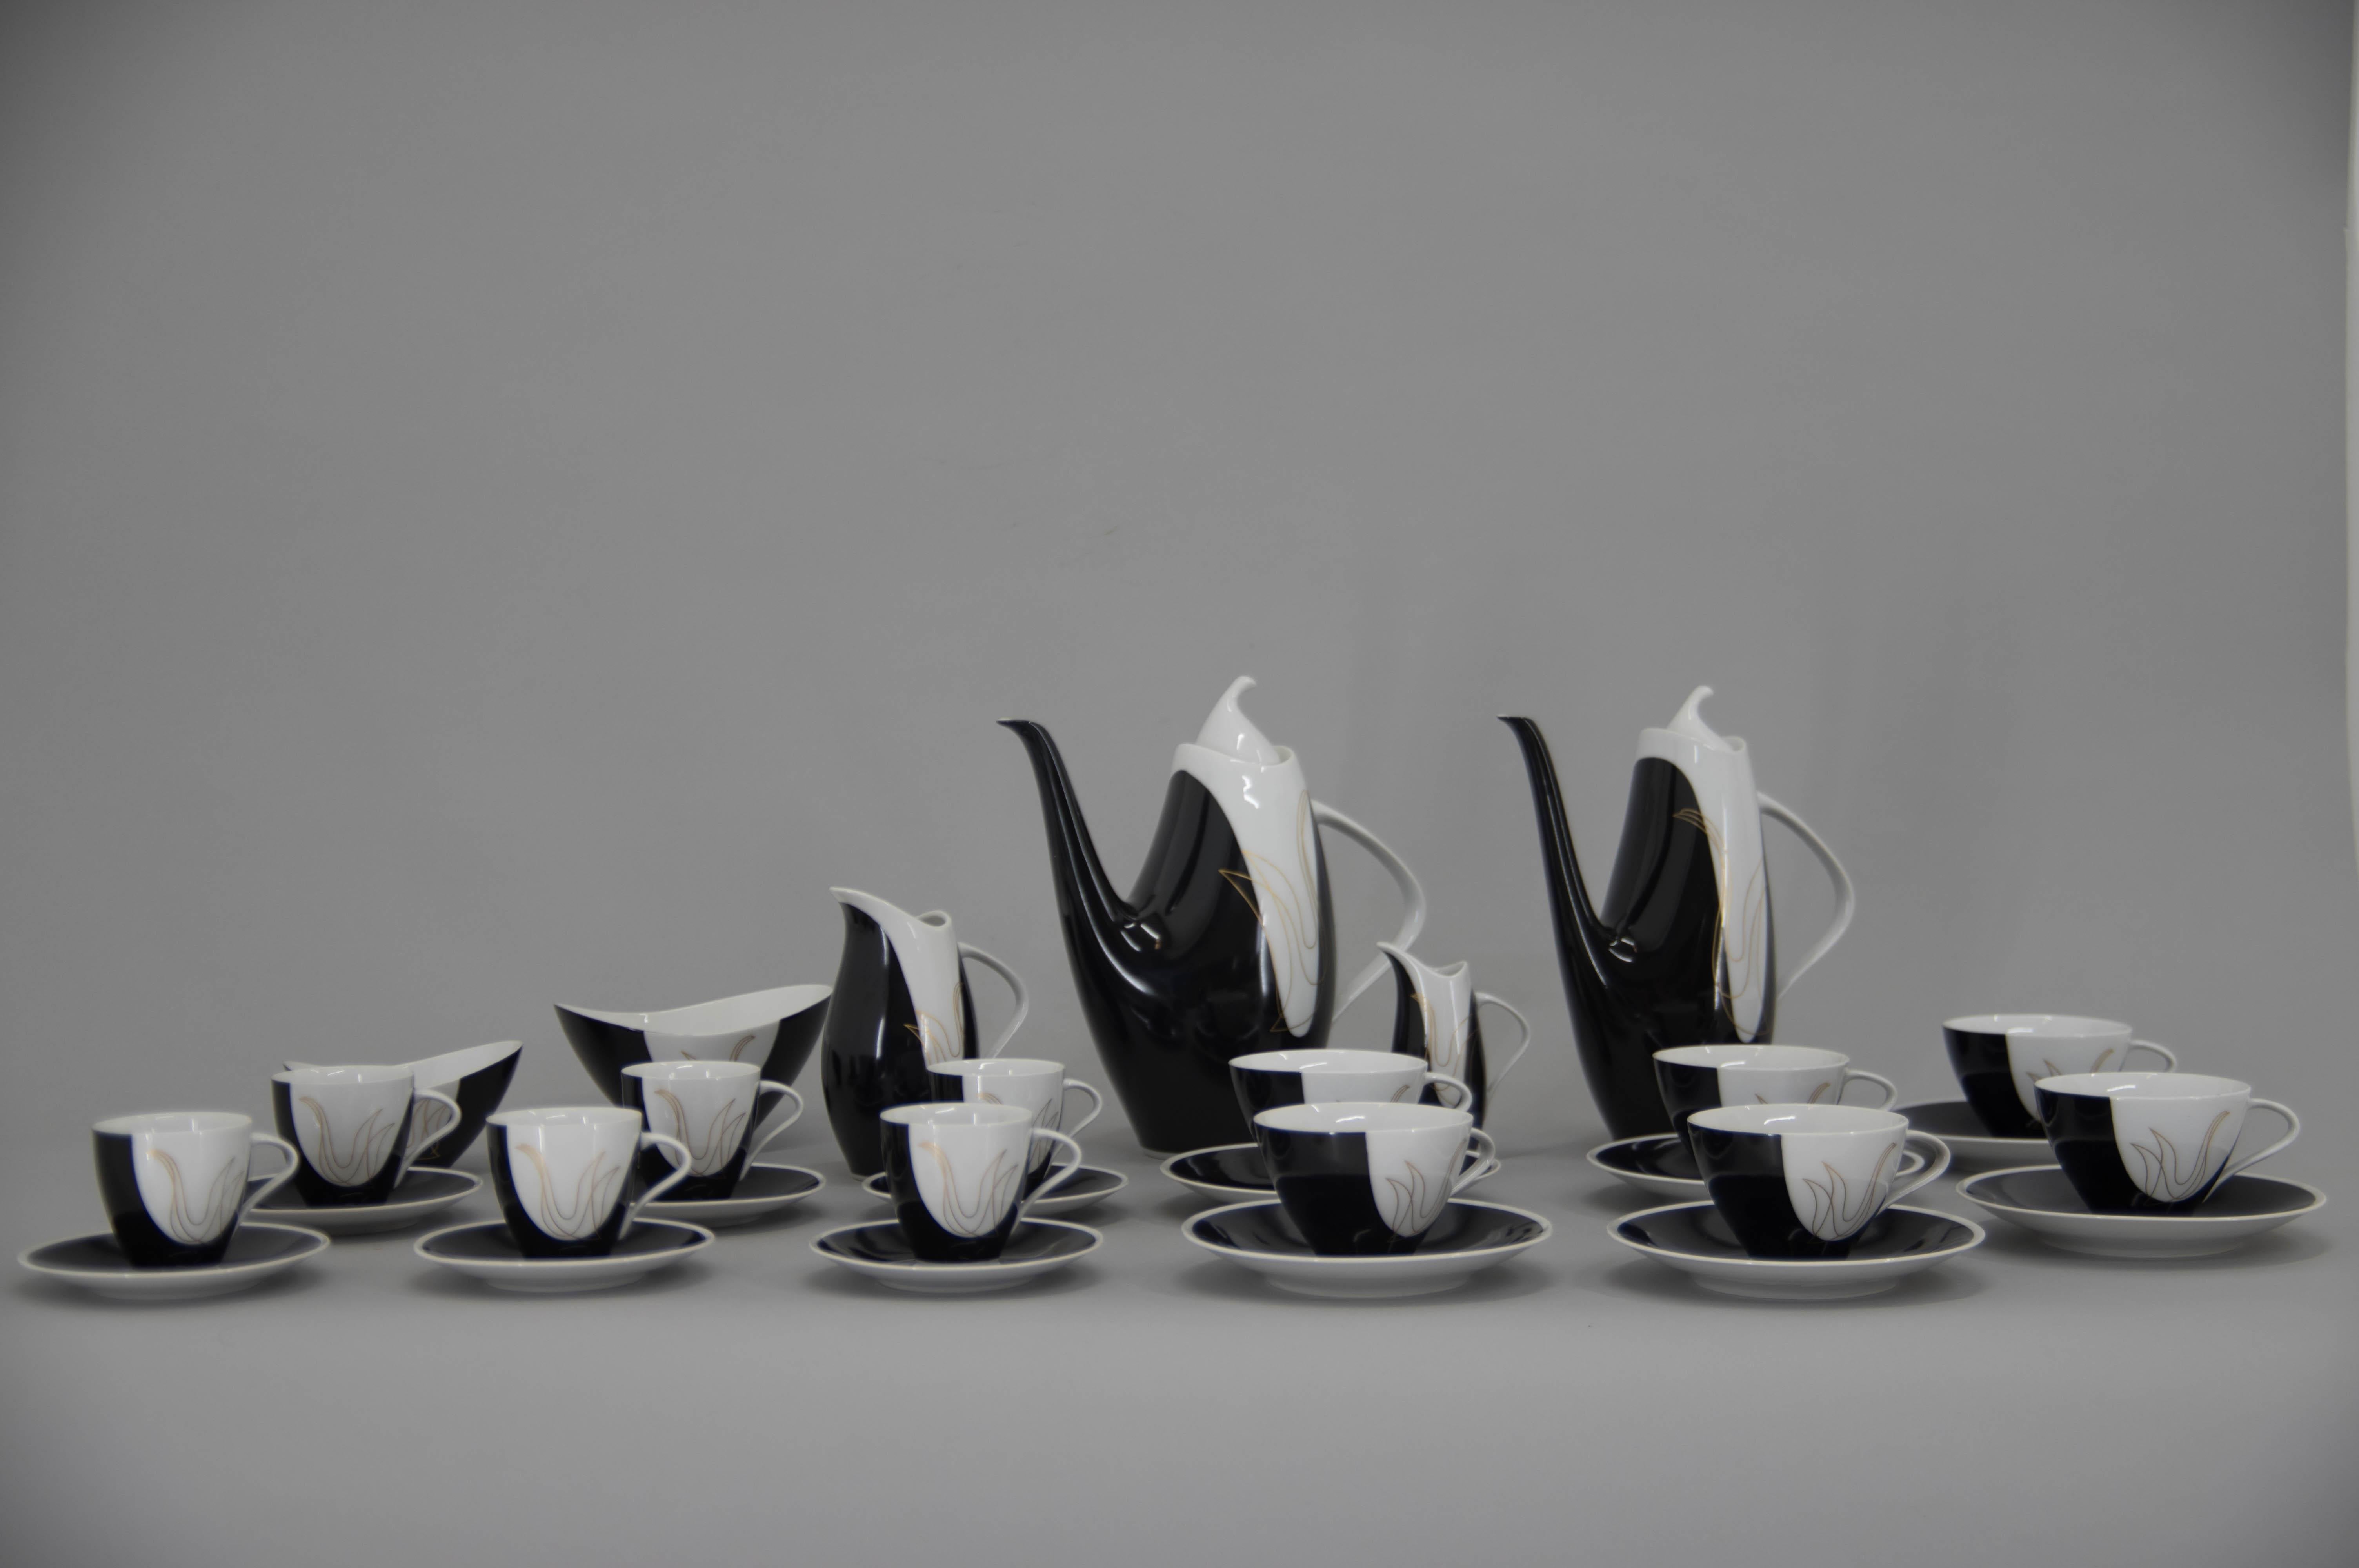 Service à café et à thé Elka conçu par Jaroslav Jezek en 1957
Grand Prix de l'Expo 1958
Fabriqué et marqué par Brezova - Pirkenhammer
6 tasses à thé avec assiettes
6 tasses à café avec assiettes
1 théière
1 cafetière
1 pot de crème
2 sucriers
1 pot